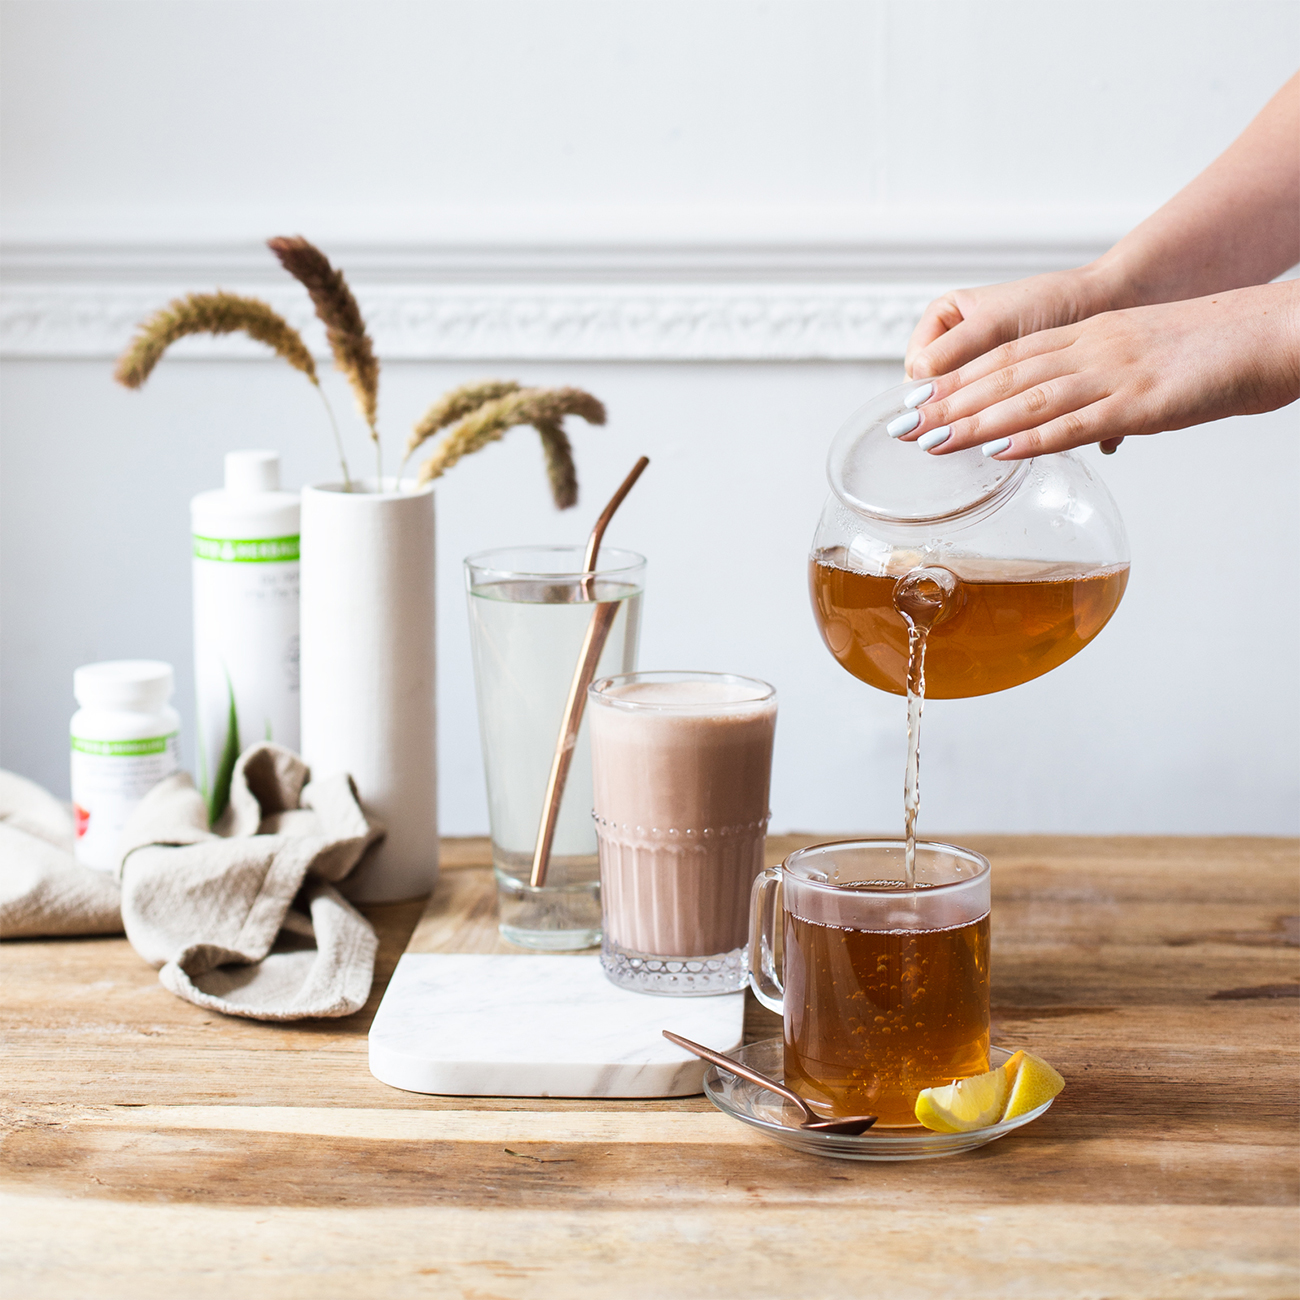 Billede: Herbalife nutrition velafbalanceret morgenmad og håndophældt citronte te i en kop